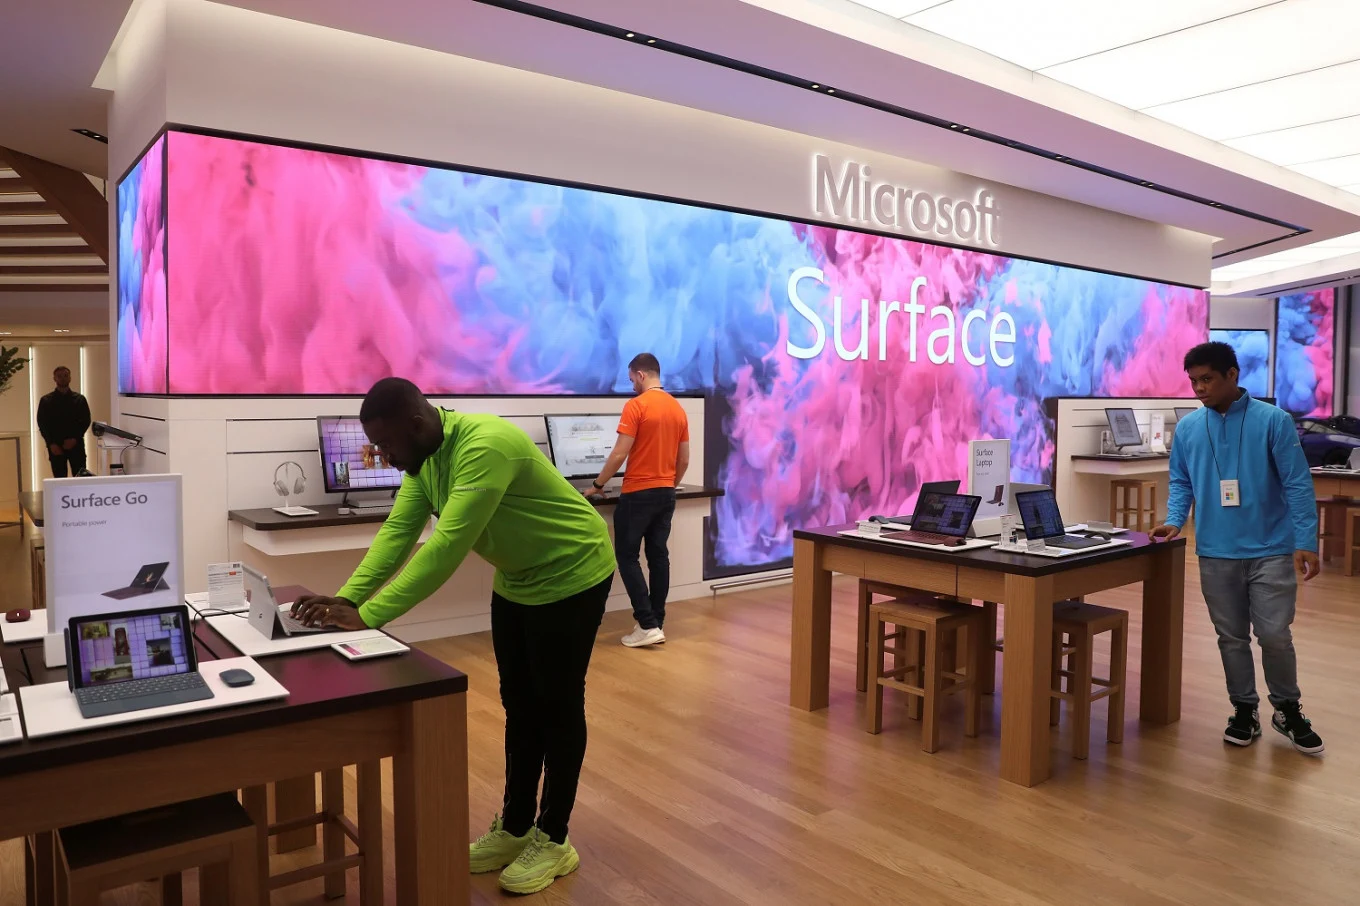 Microsoft chiude definitivamente tutti i suoi Store fisici